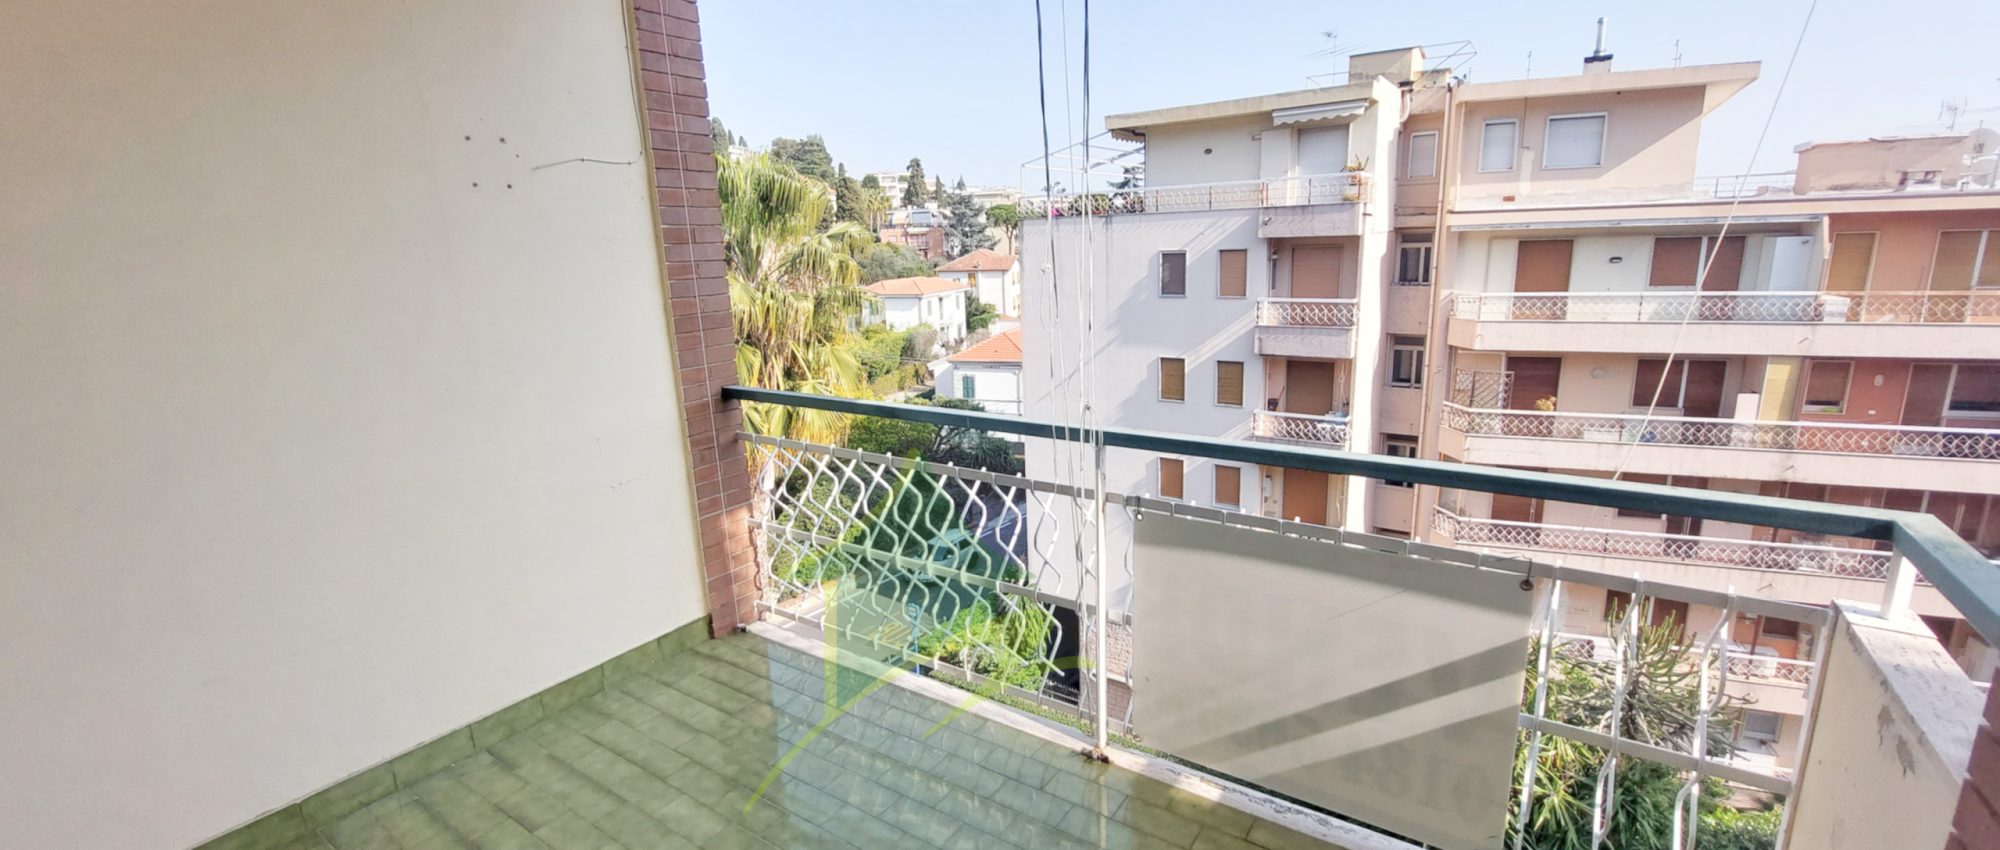 CONTESTO SIGNORILE – Appartamento Bilocale a Sanremo